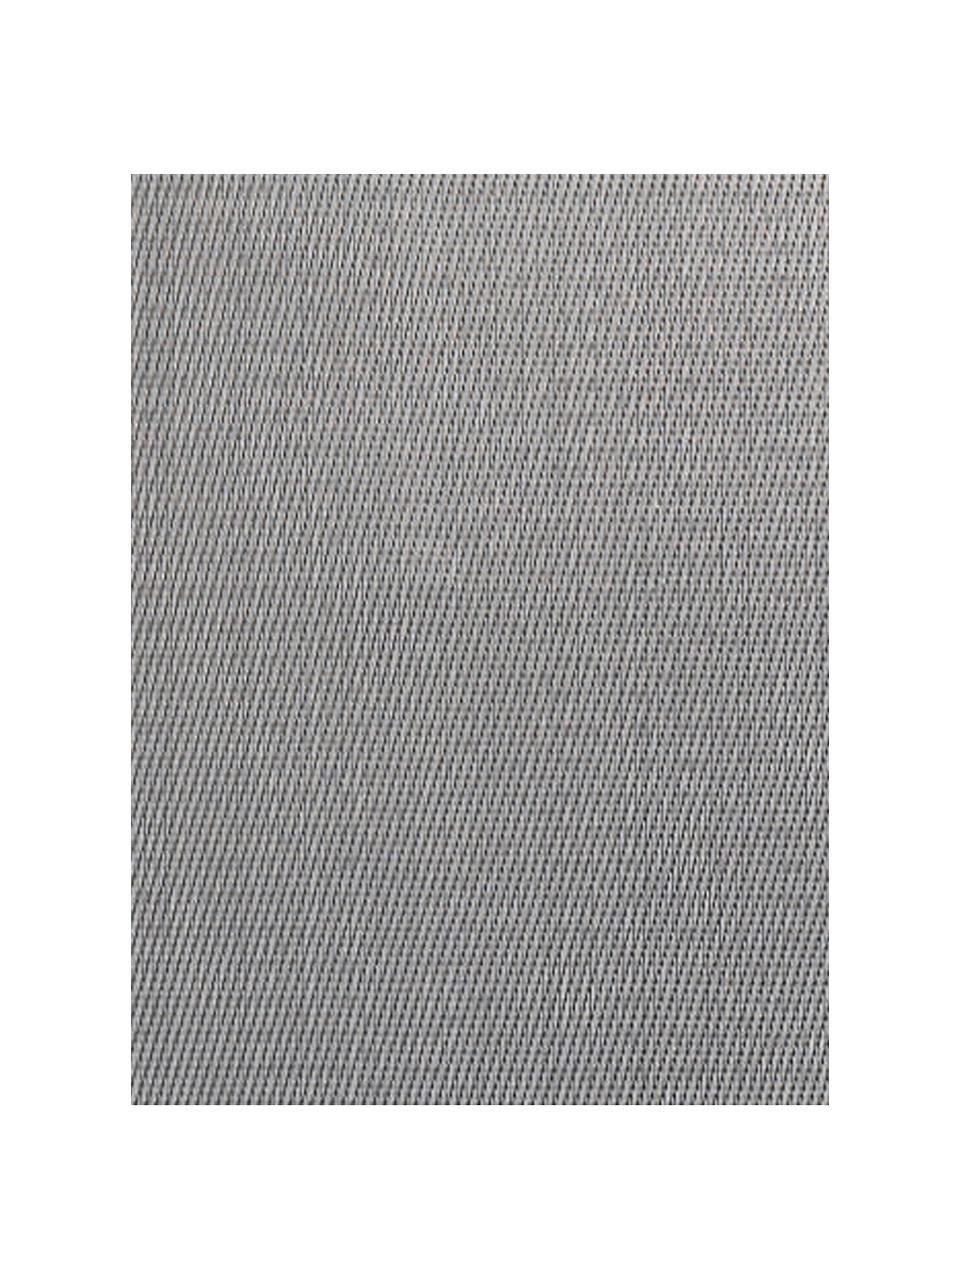 Kunststoffen placemats Trefl, 2 stuks, Kunststof (PVC), Grijstinten, B 33 x L 46 cm